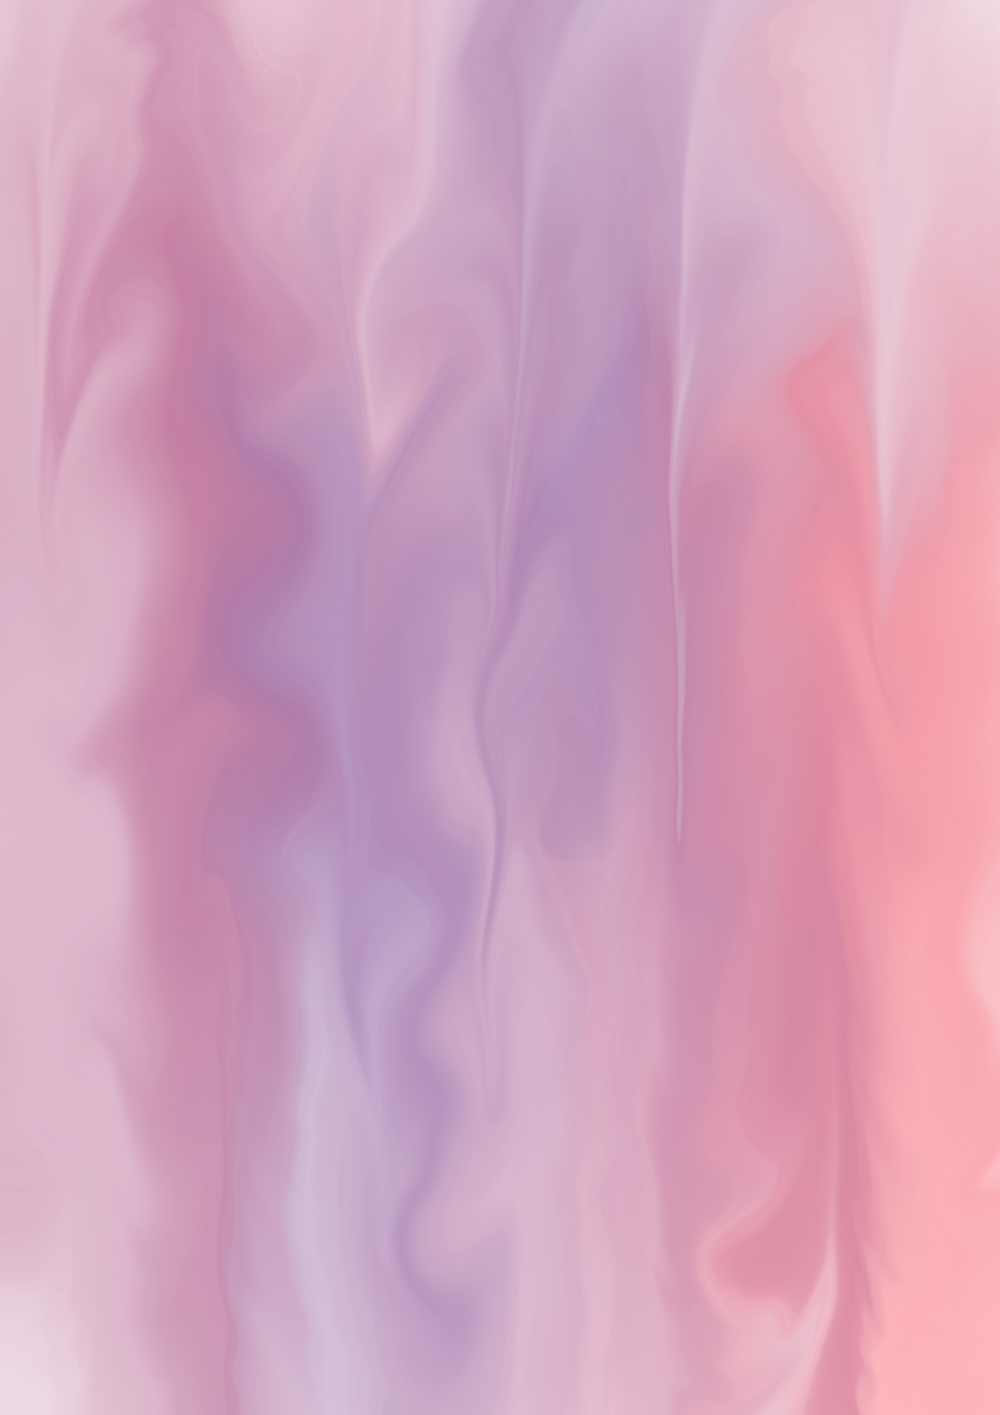 Ein verschwommenes Bild eines rosa und violetten Hintergrunds